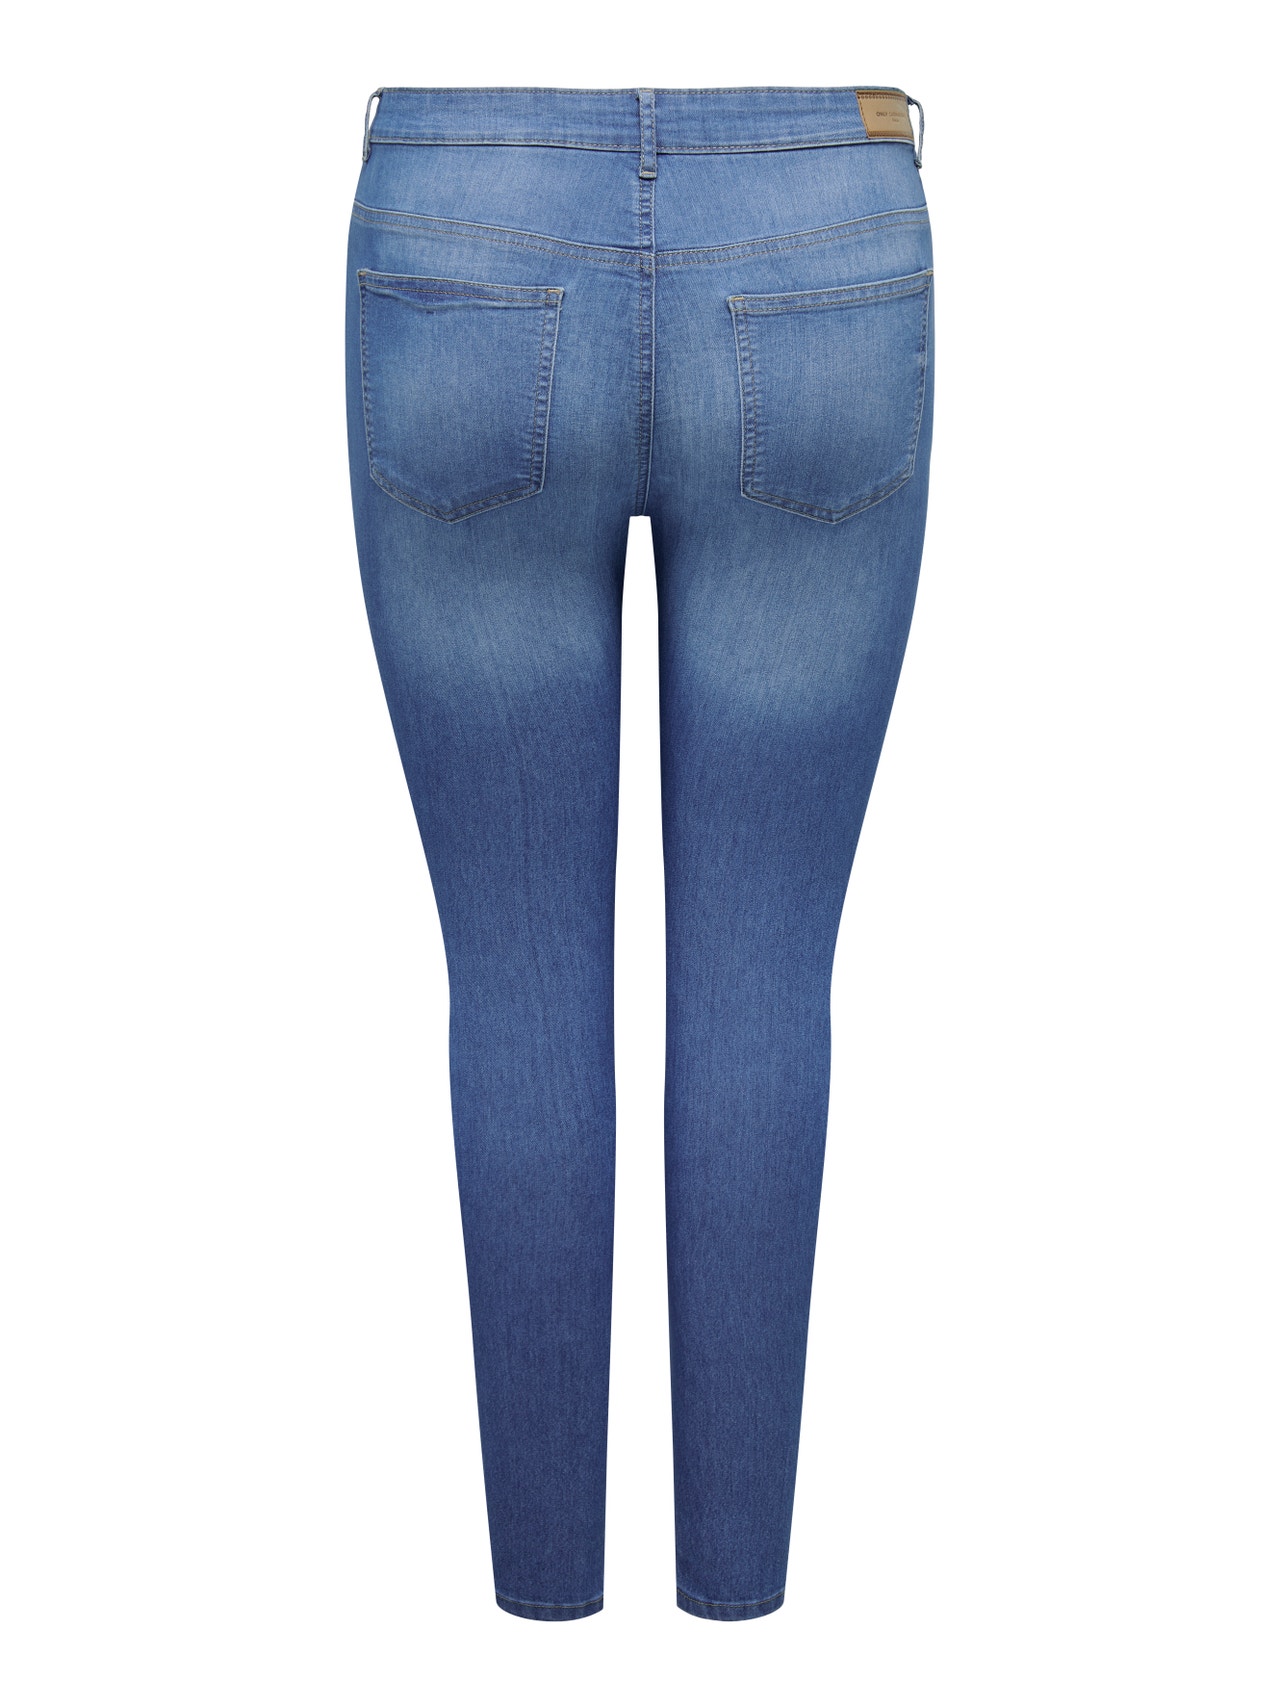 Pantalon stretch automne hiver KIARA bleu jean